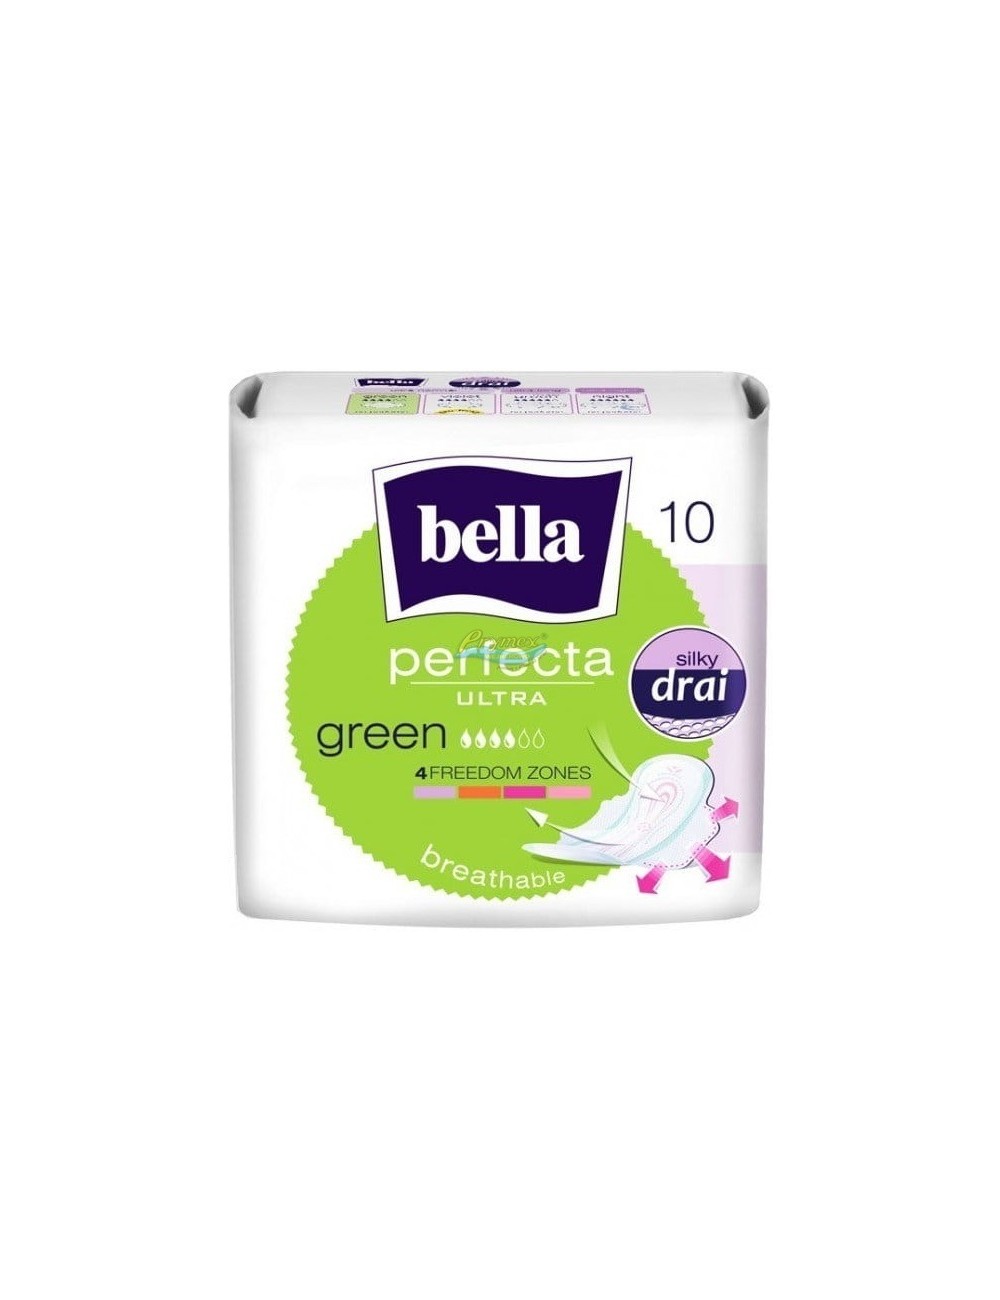 Bella Podpaski Higieniczne Ultracienkie Perfecta Ultra Green 10 szt